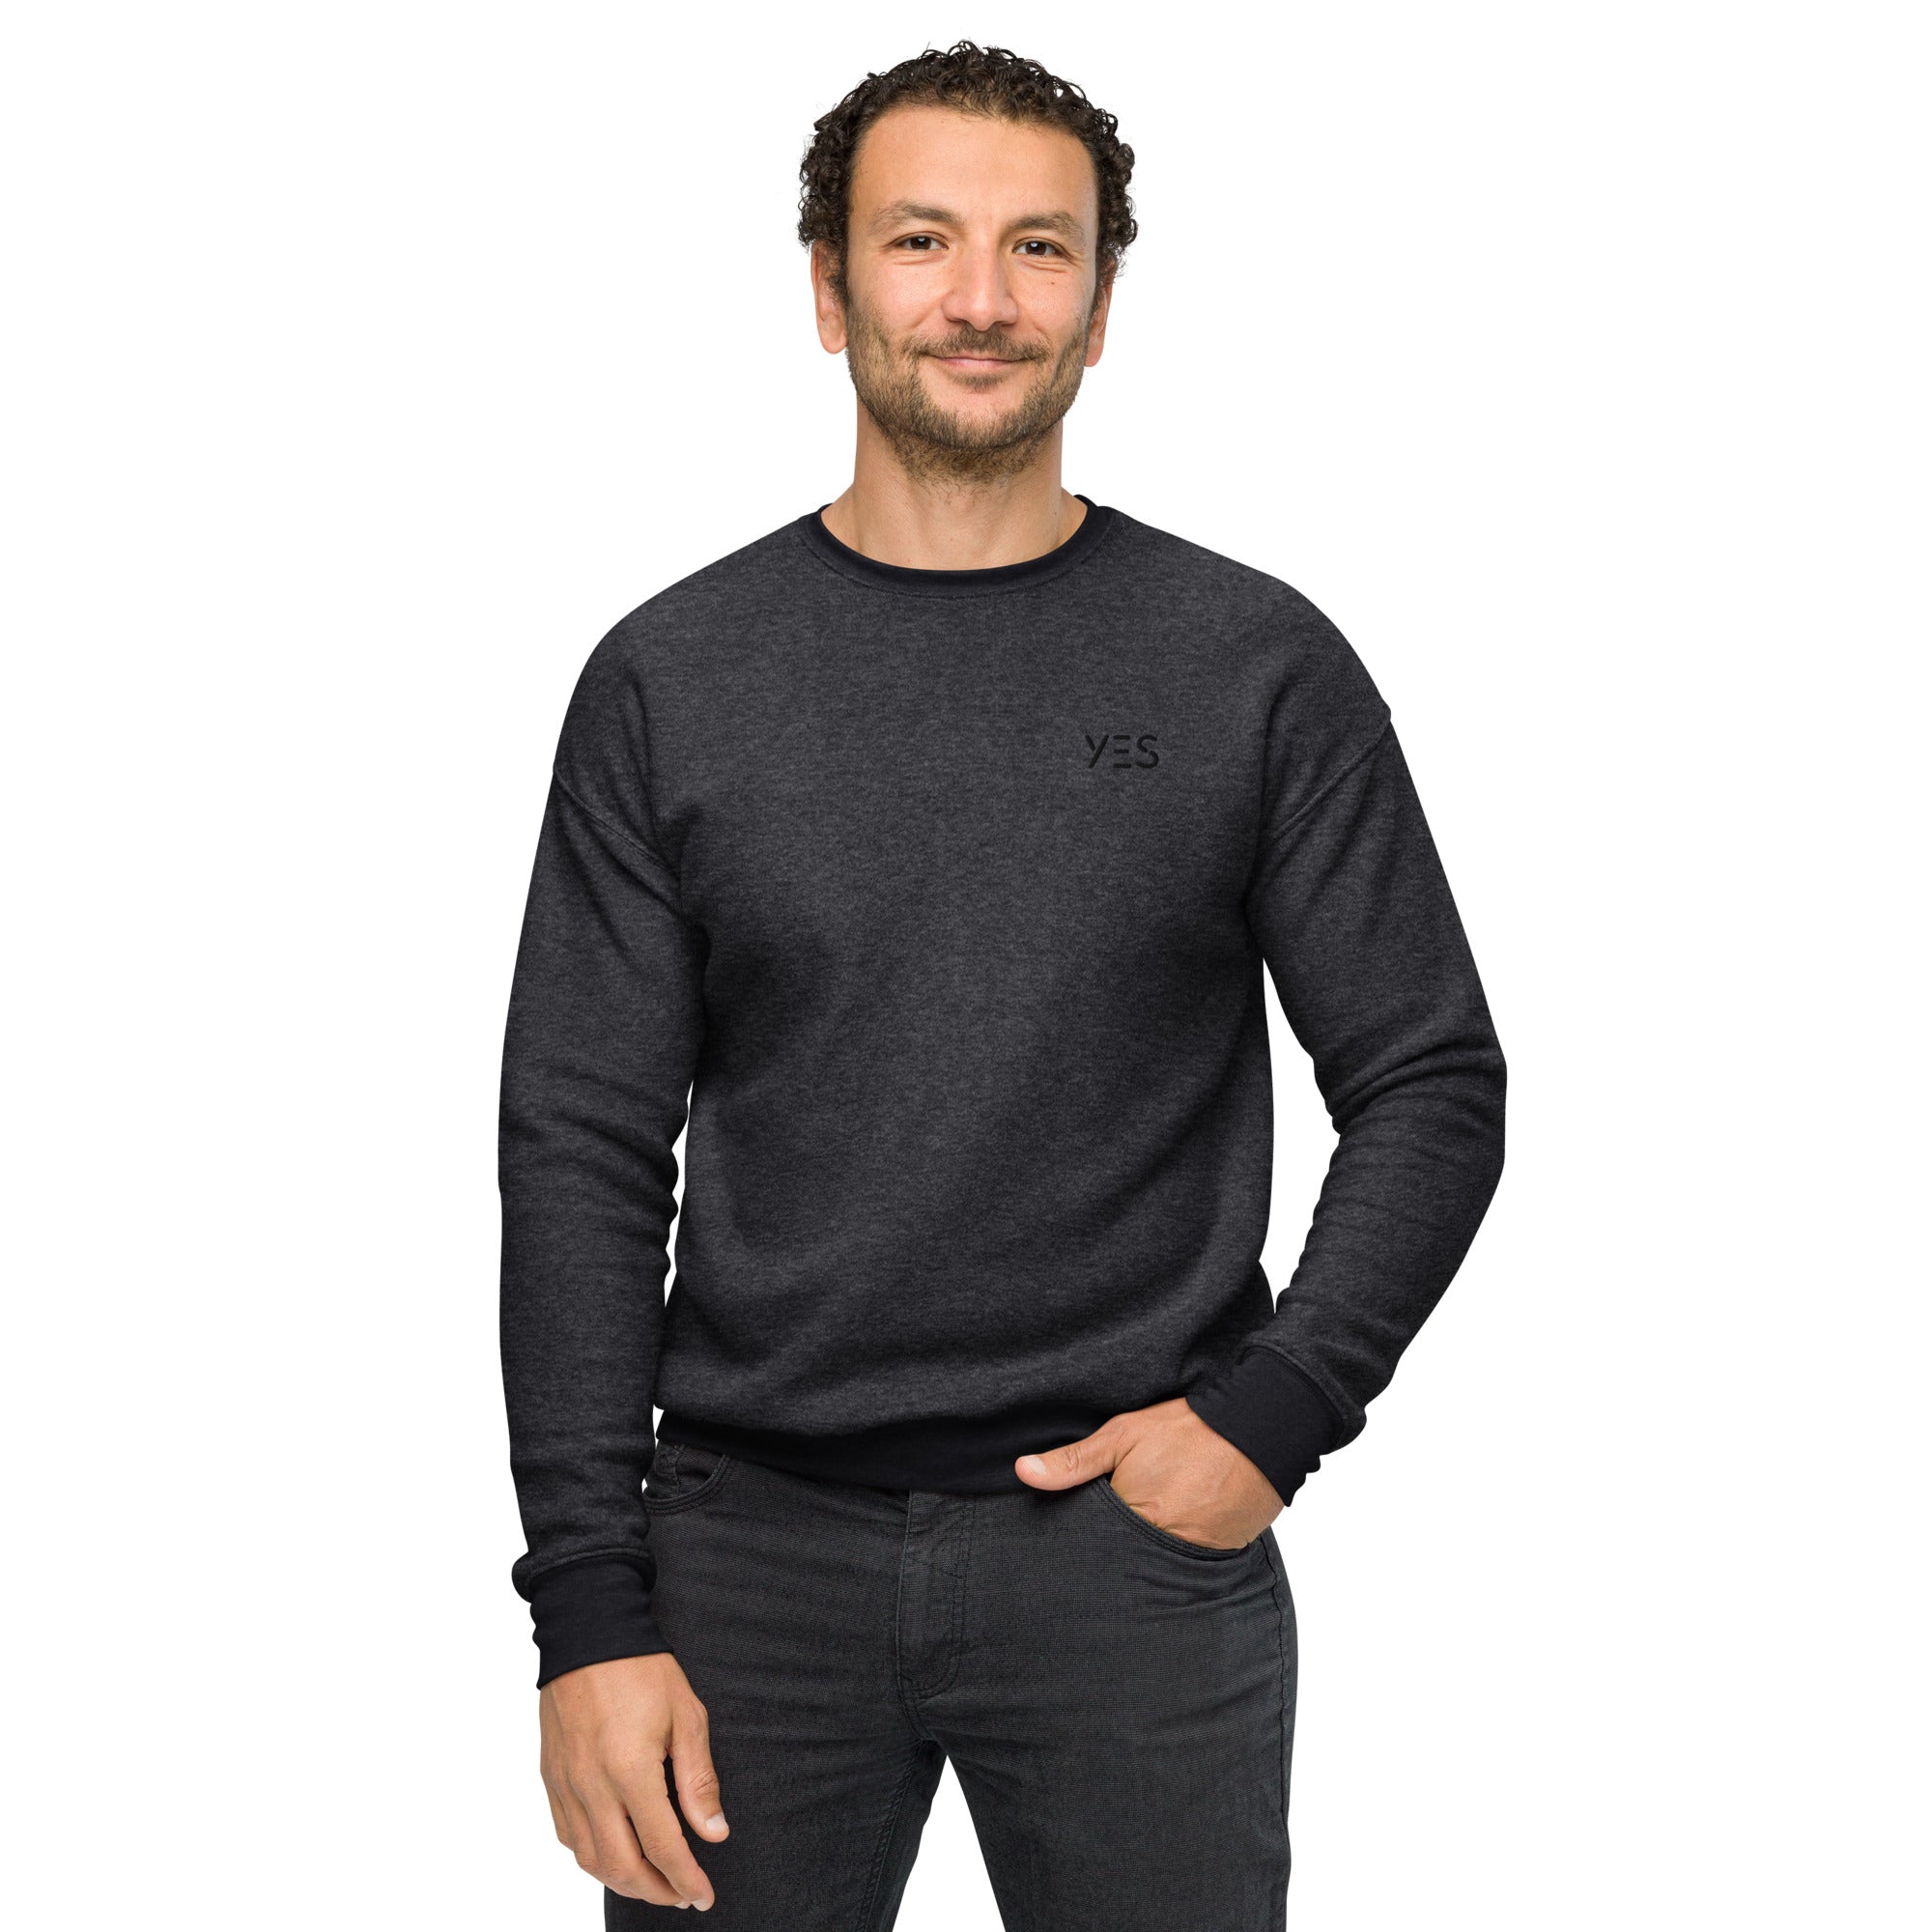 Unisex sueded fleece sweatshirt